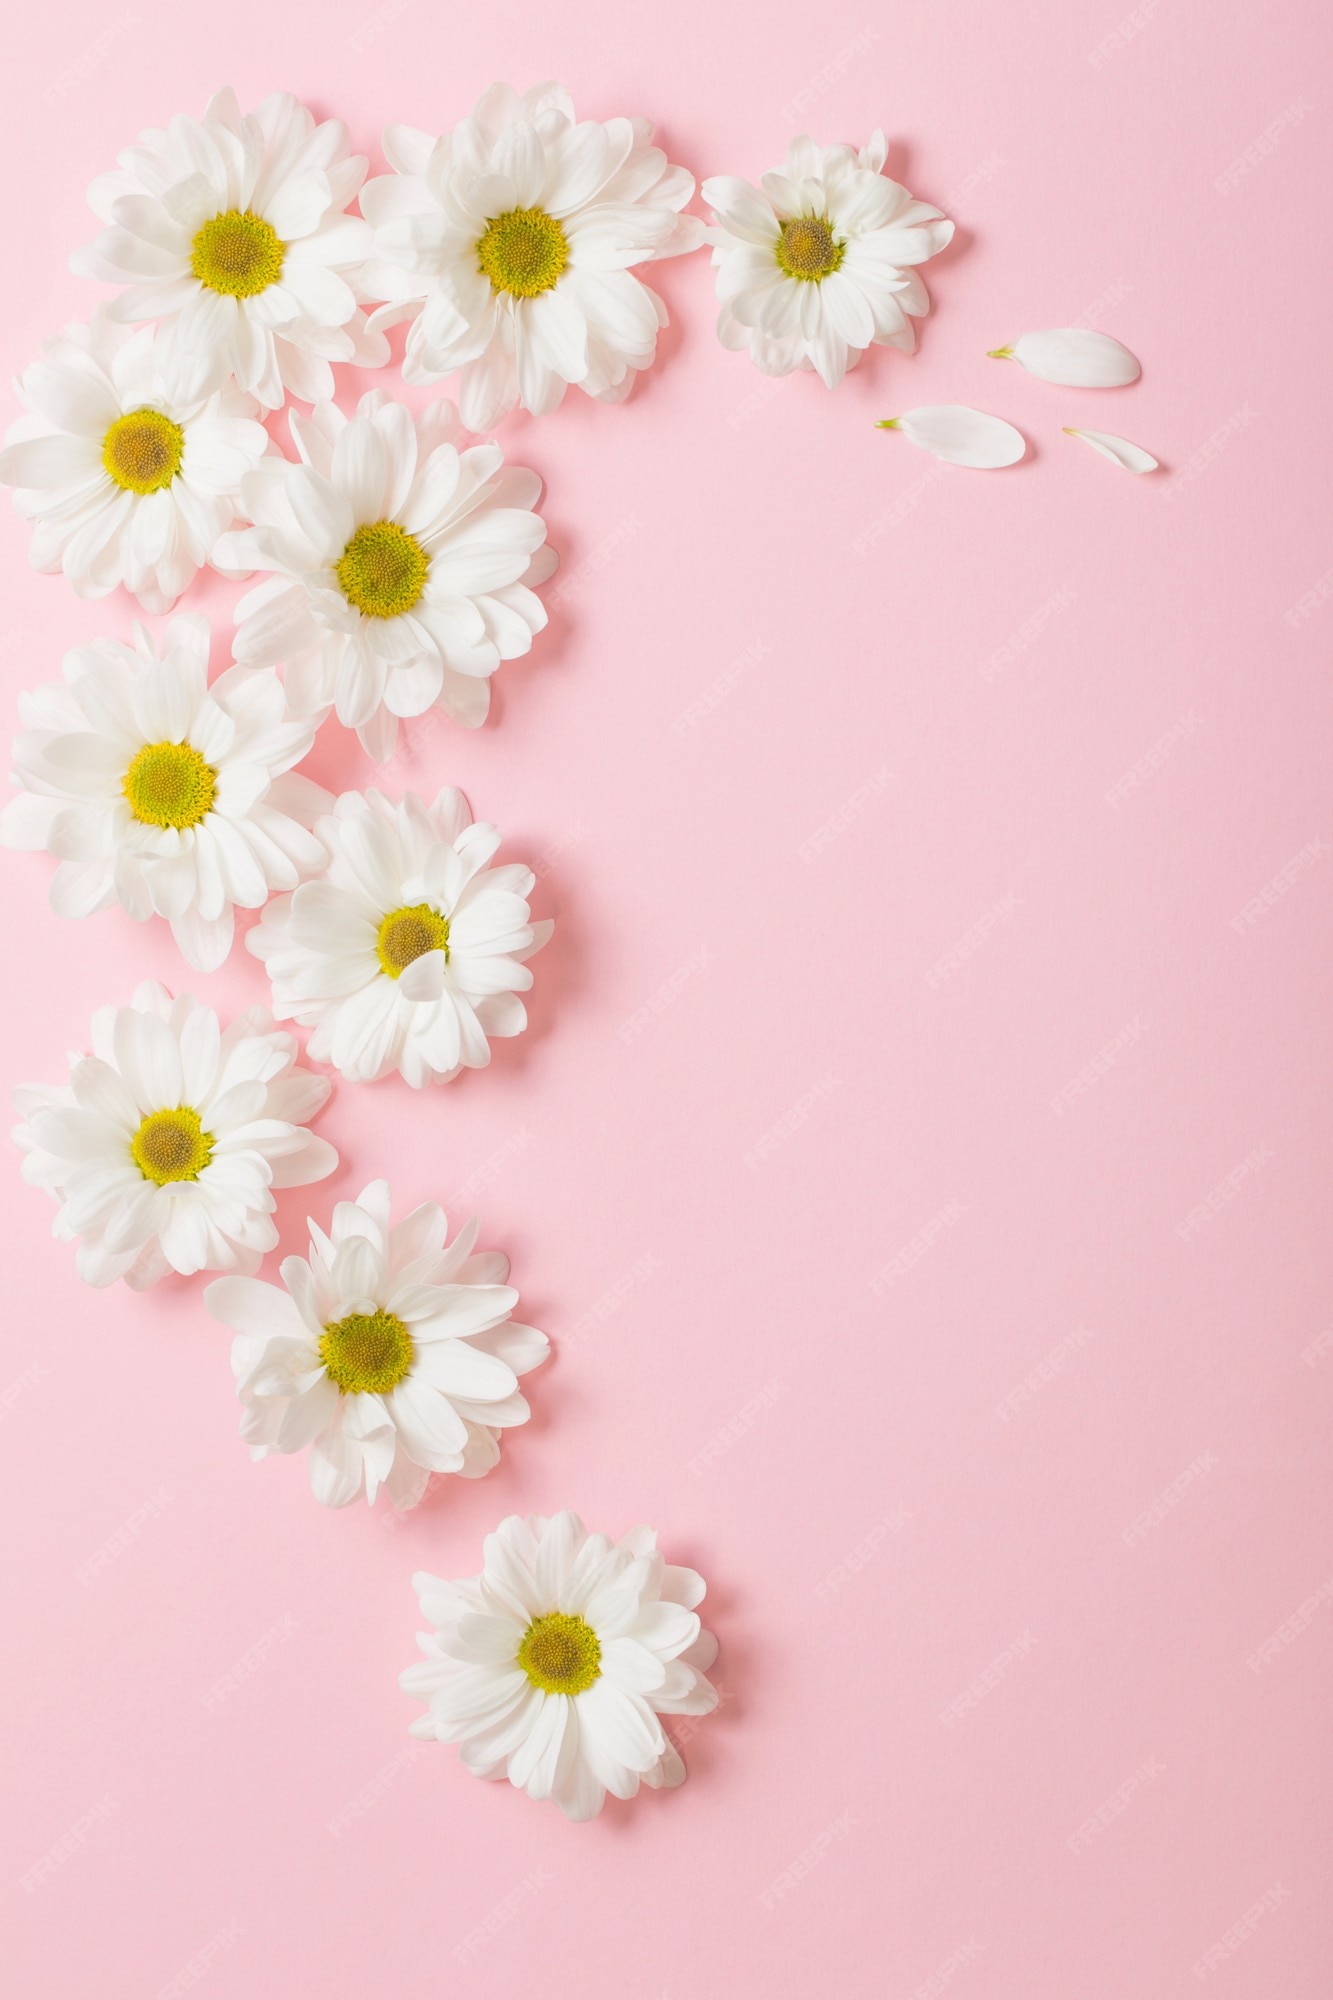 Nếu bạn yêu thích sự tinh tế và đầy lãng mạn, những bông hoa trắng trên nền hồng nhạt chắc chắn sẽ làm bạn say đắm. Họa tiết nhẹ nhàng, bức hình tuyệt đẹp này sẽ mang lại cho bạn cảm giác rộn ràng và hạnh phúc.